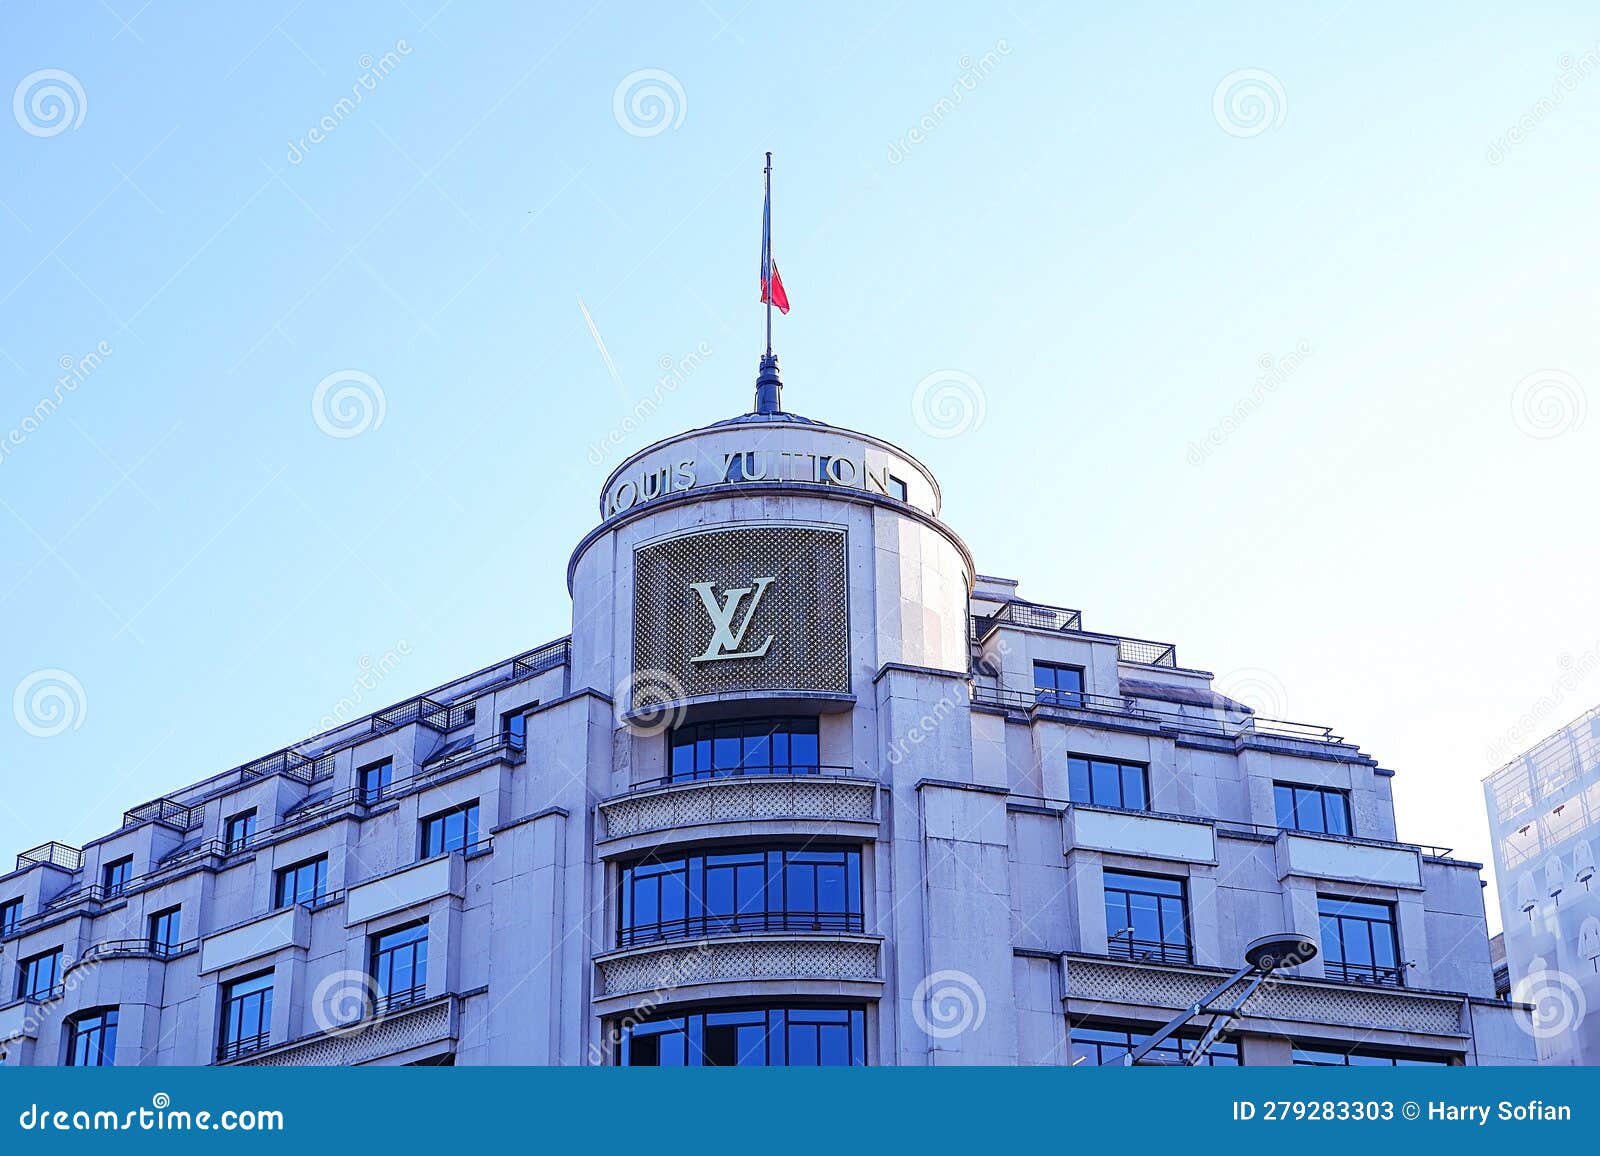 Louis Vuitton returns to Paris with the Maison Louis Vuitton Vendôme